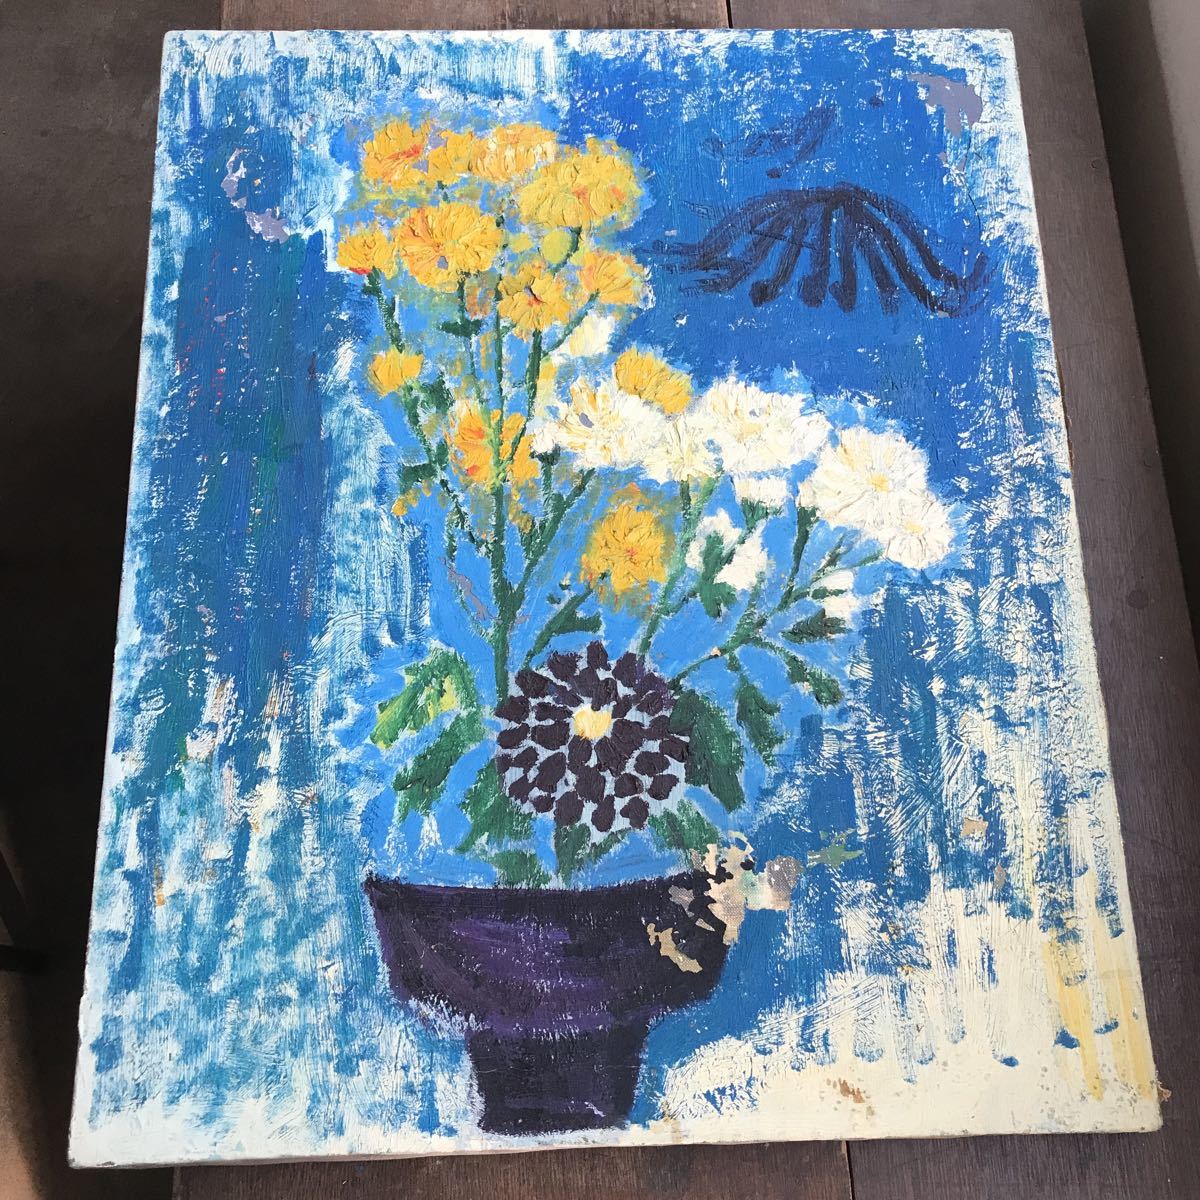 कलाकार अज्ञात पुरानी पेंटिंग तेल चित्रकला स्थिर जीवन फूल F15 प्राचीन विंटेज संग्रह, चित्रकारी, तैल चित्र, स्थिर वस्तु चित्रण